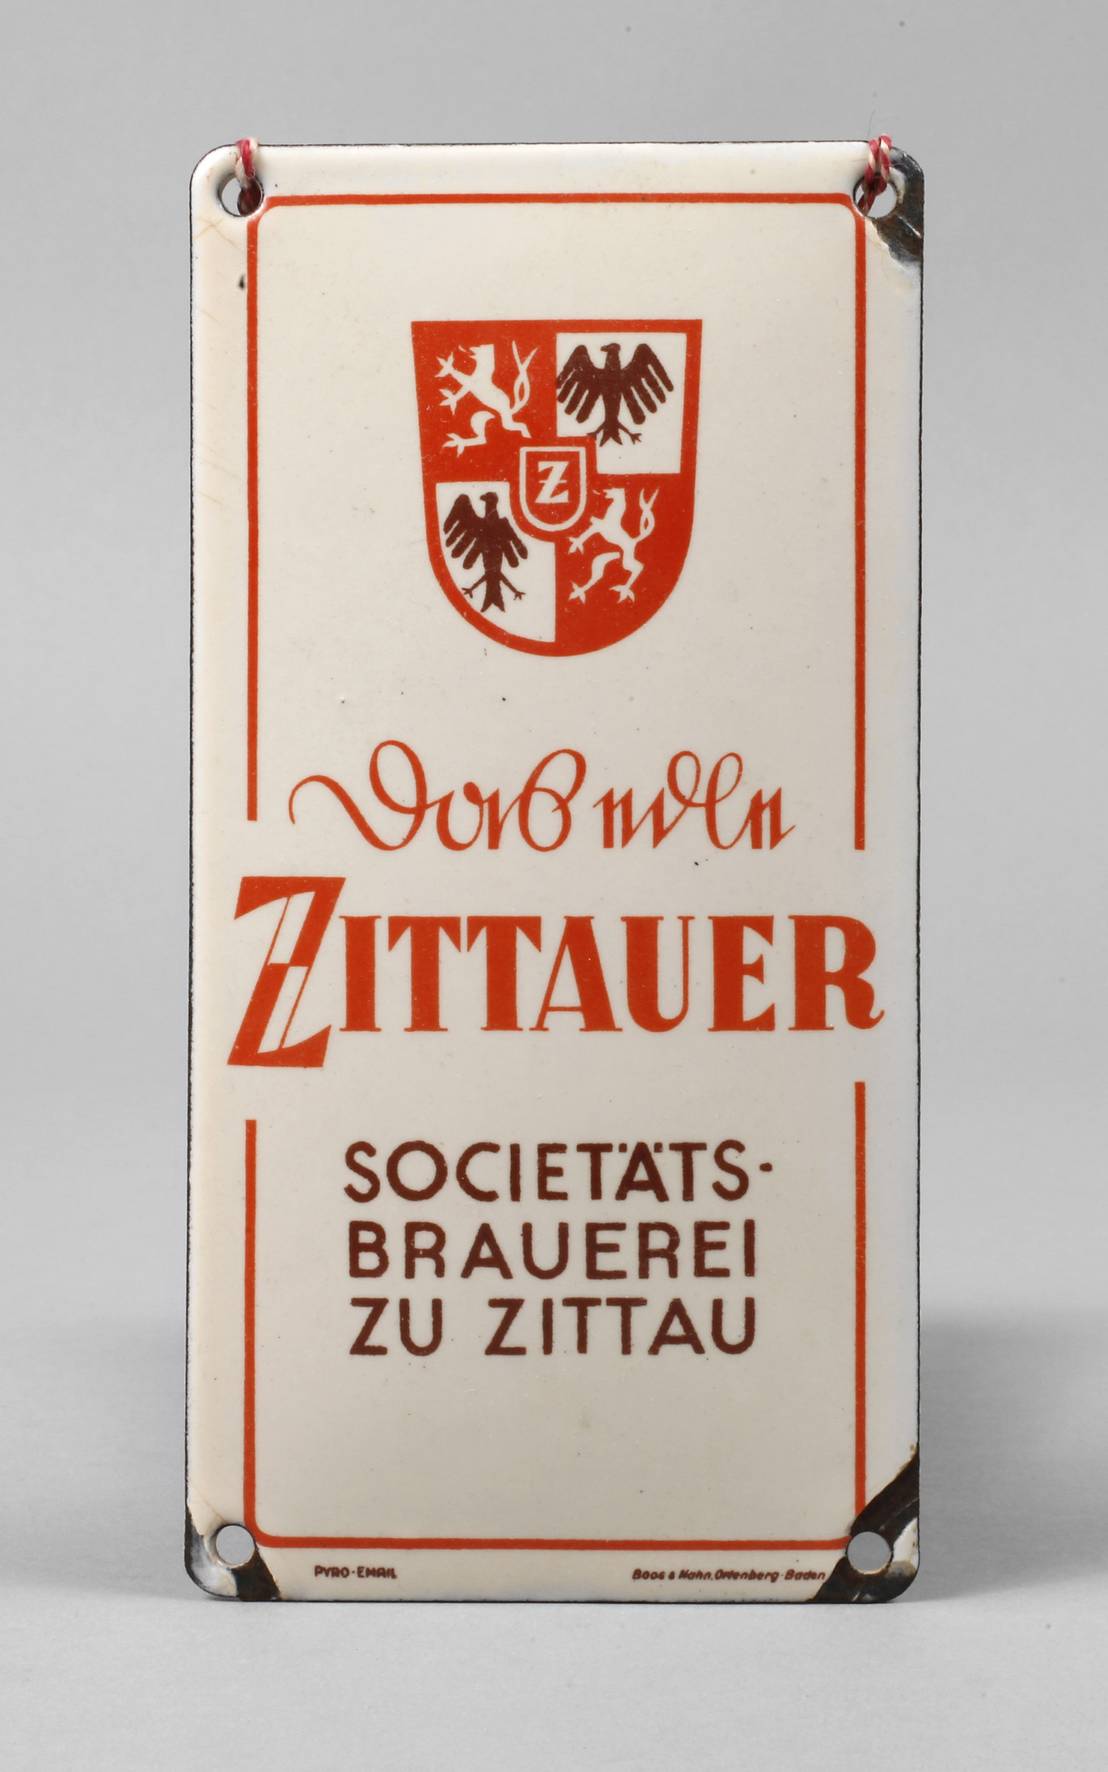 Kleines Emailschild Zittauer Brauerei